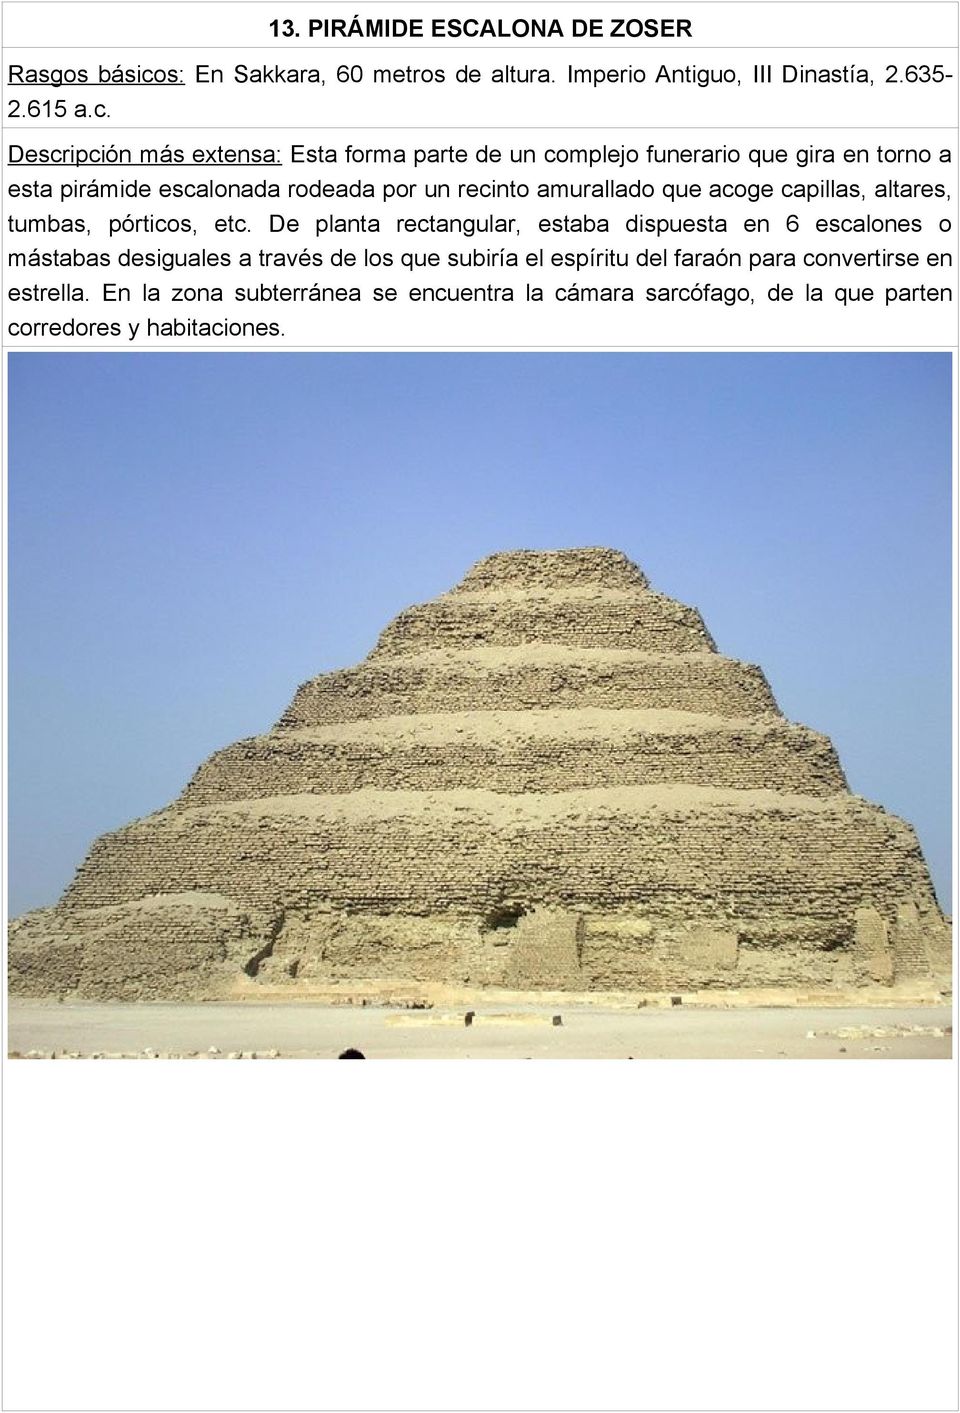 Descripción más extensa: Esta forma parte de un complejo funerario que gira en torno a esta pirámide escalonada rodeada por un recinto amurallado